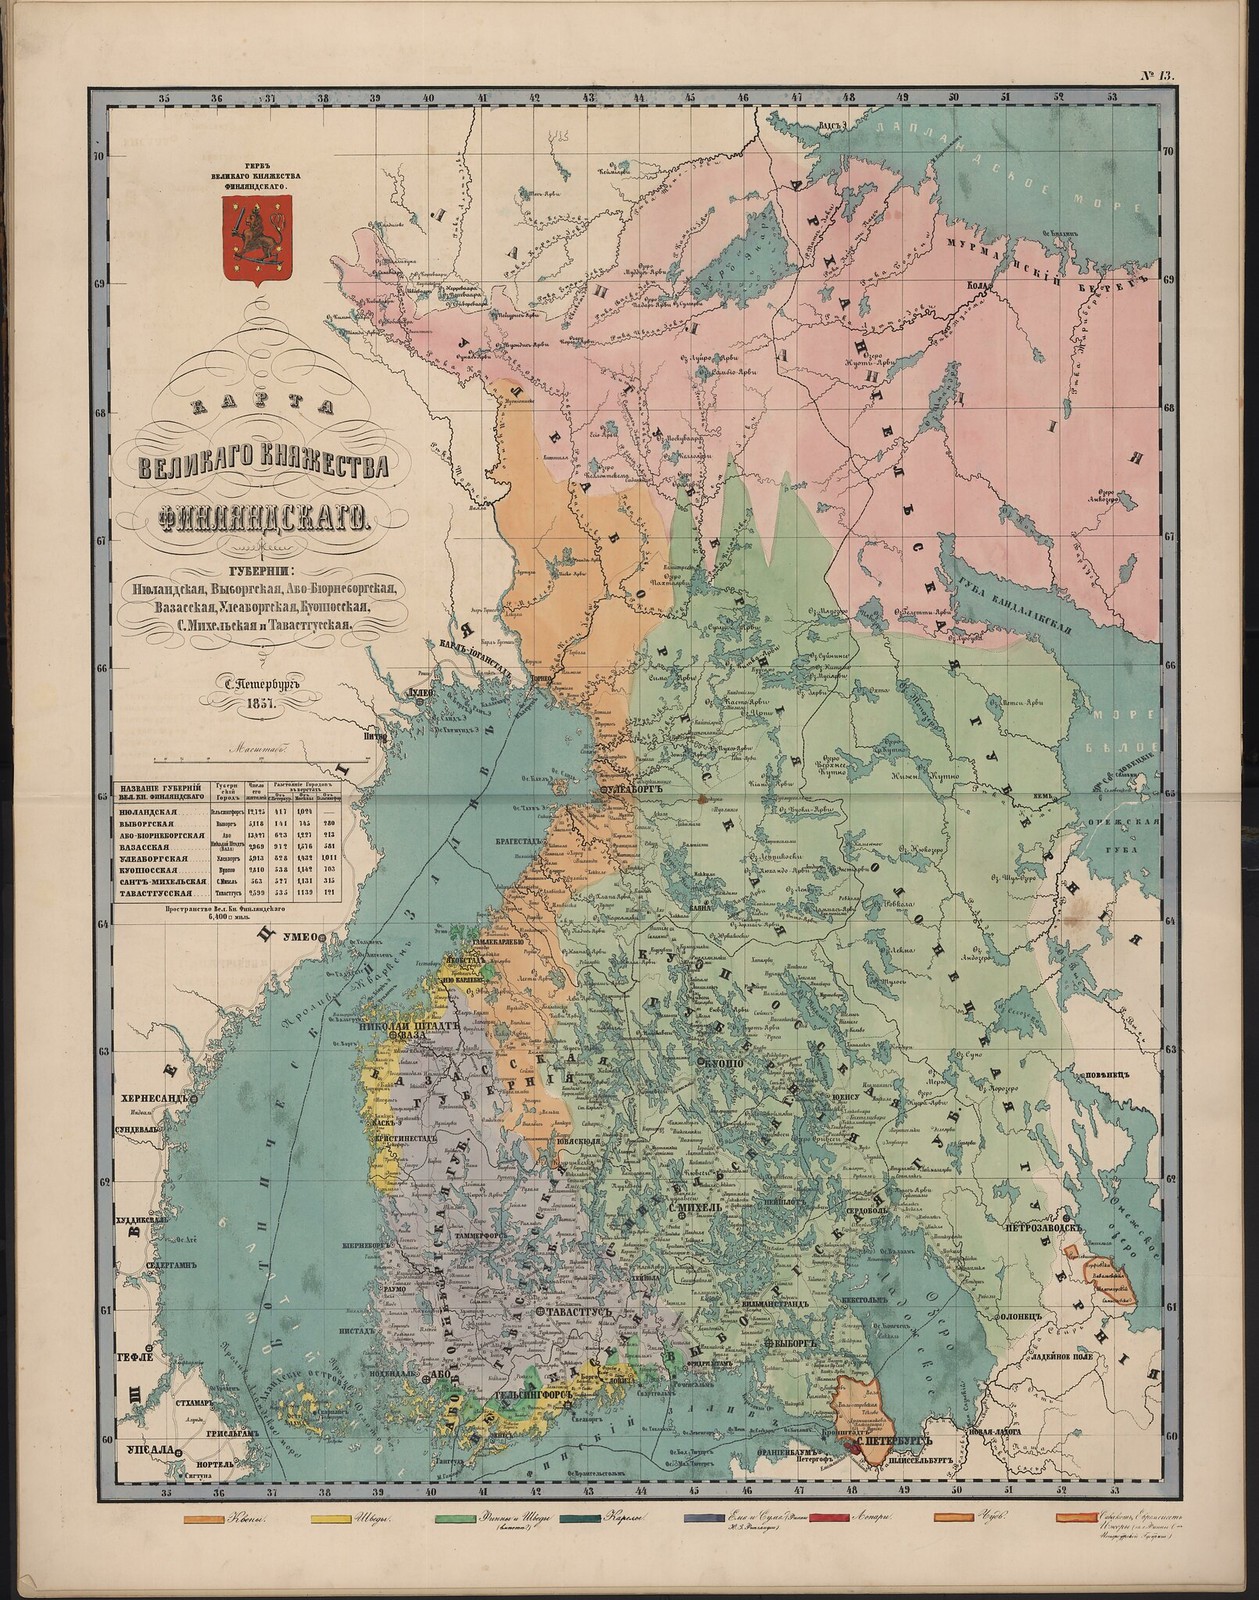 13-а. Карта Великого Княжества Финляндского (этногр)